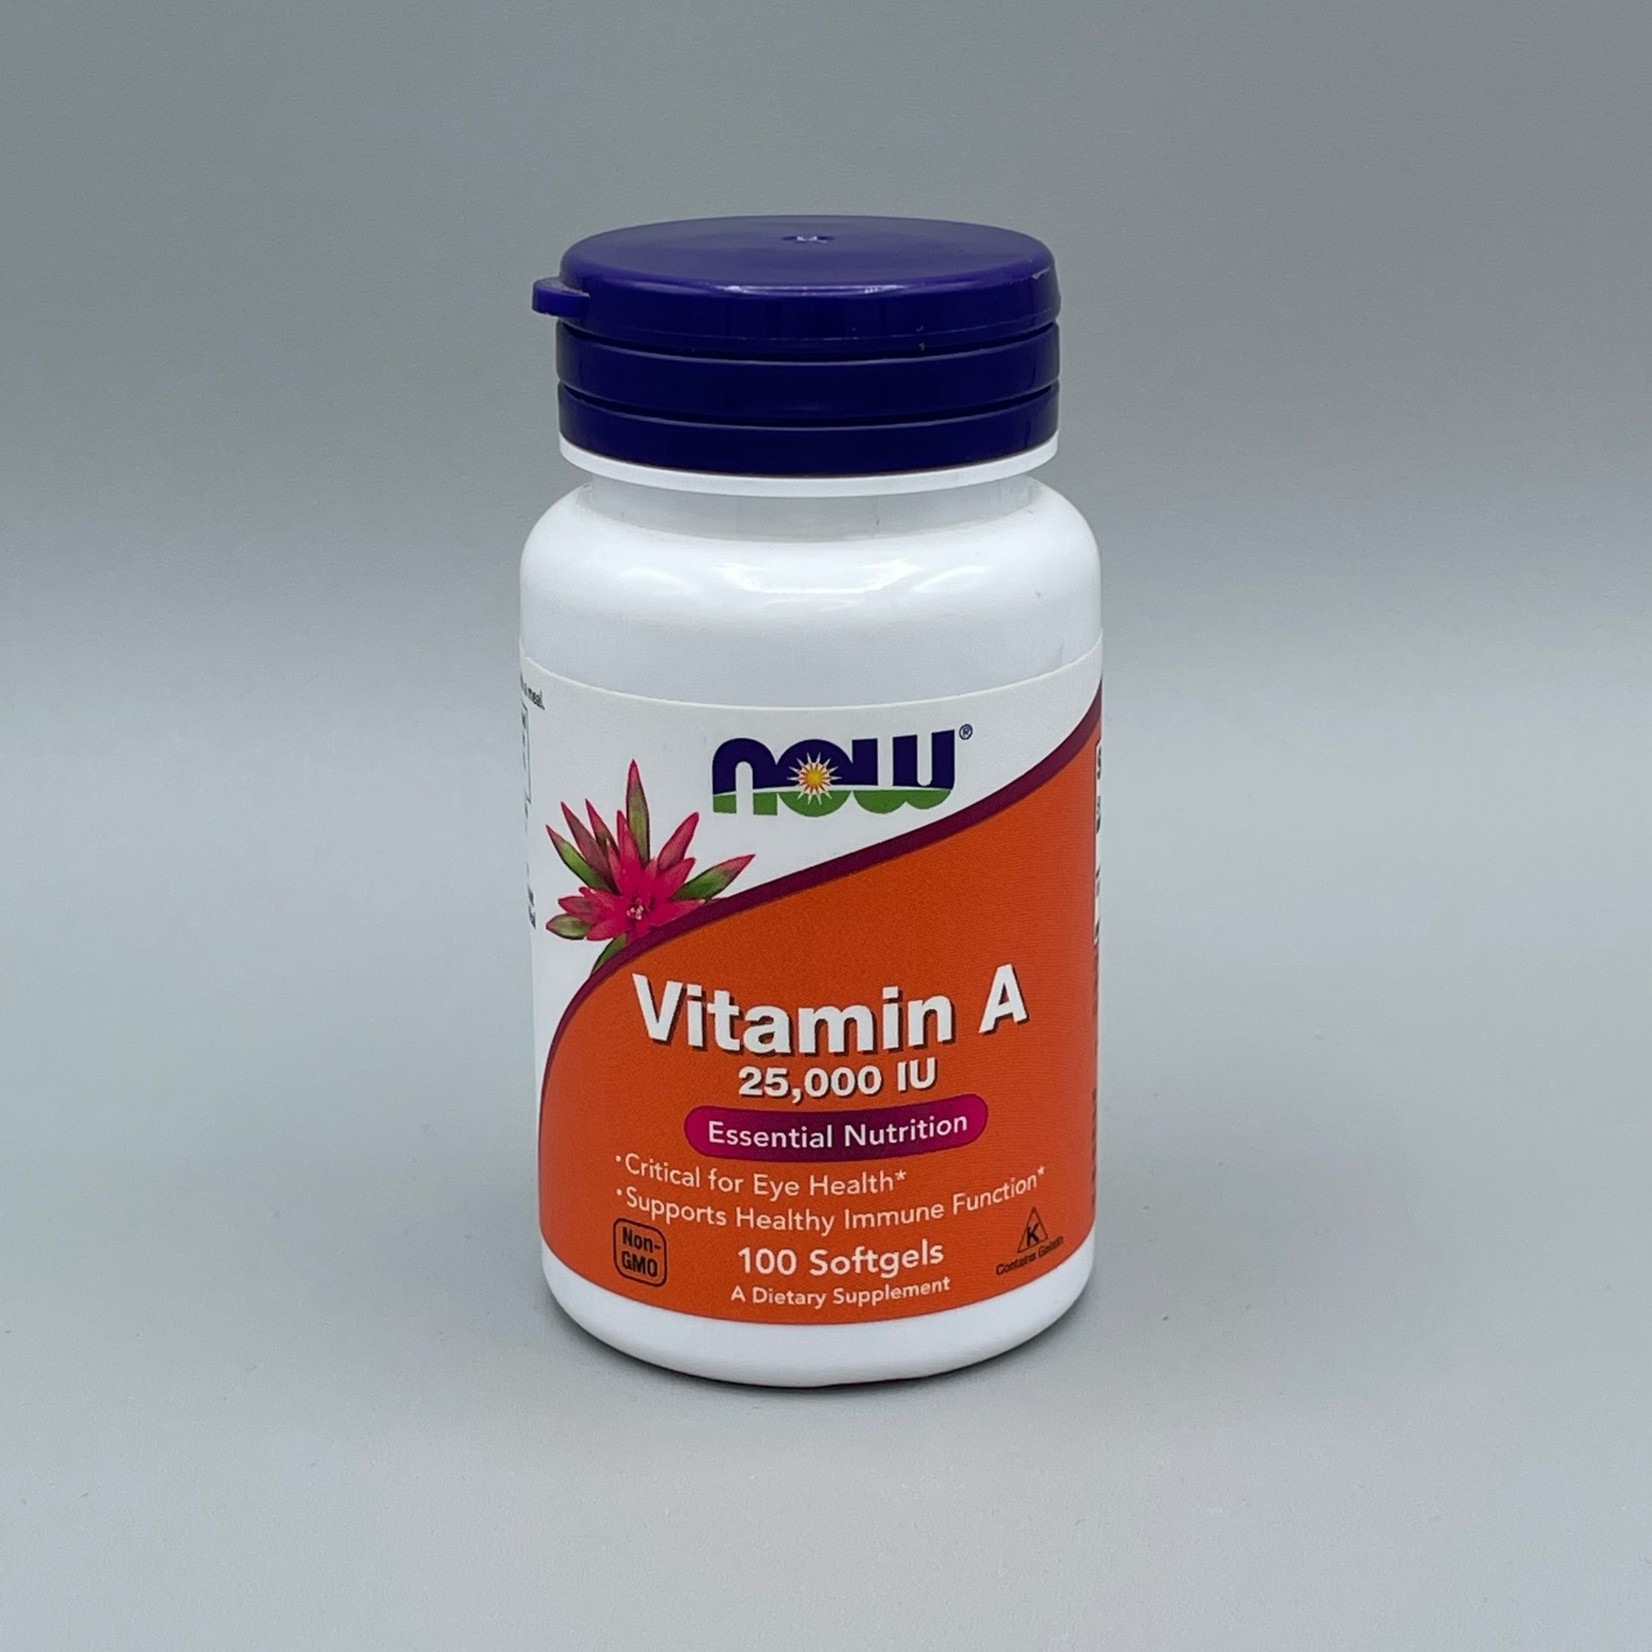 NOW Vitamin A - 25,000 IU, 100 Softgels